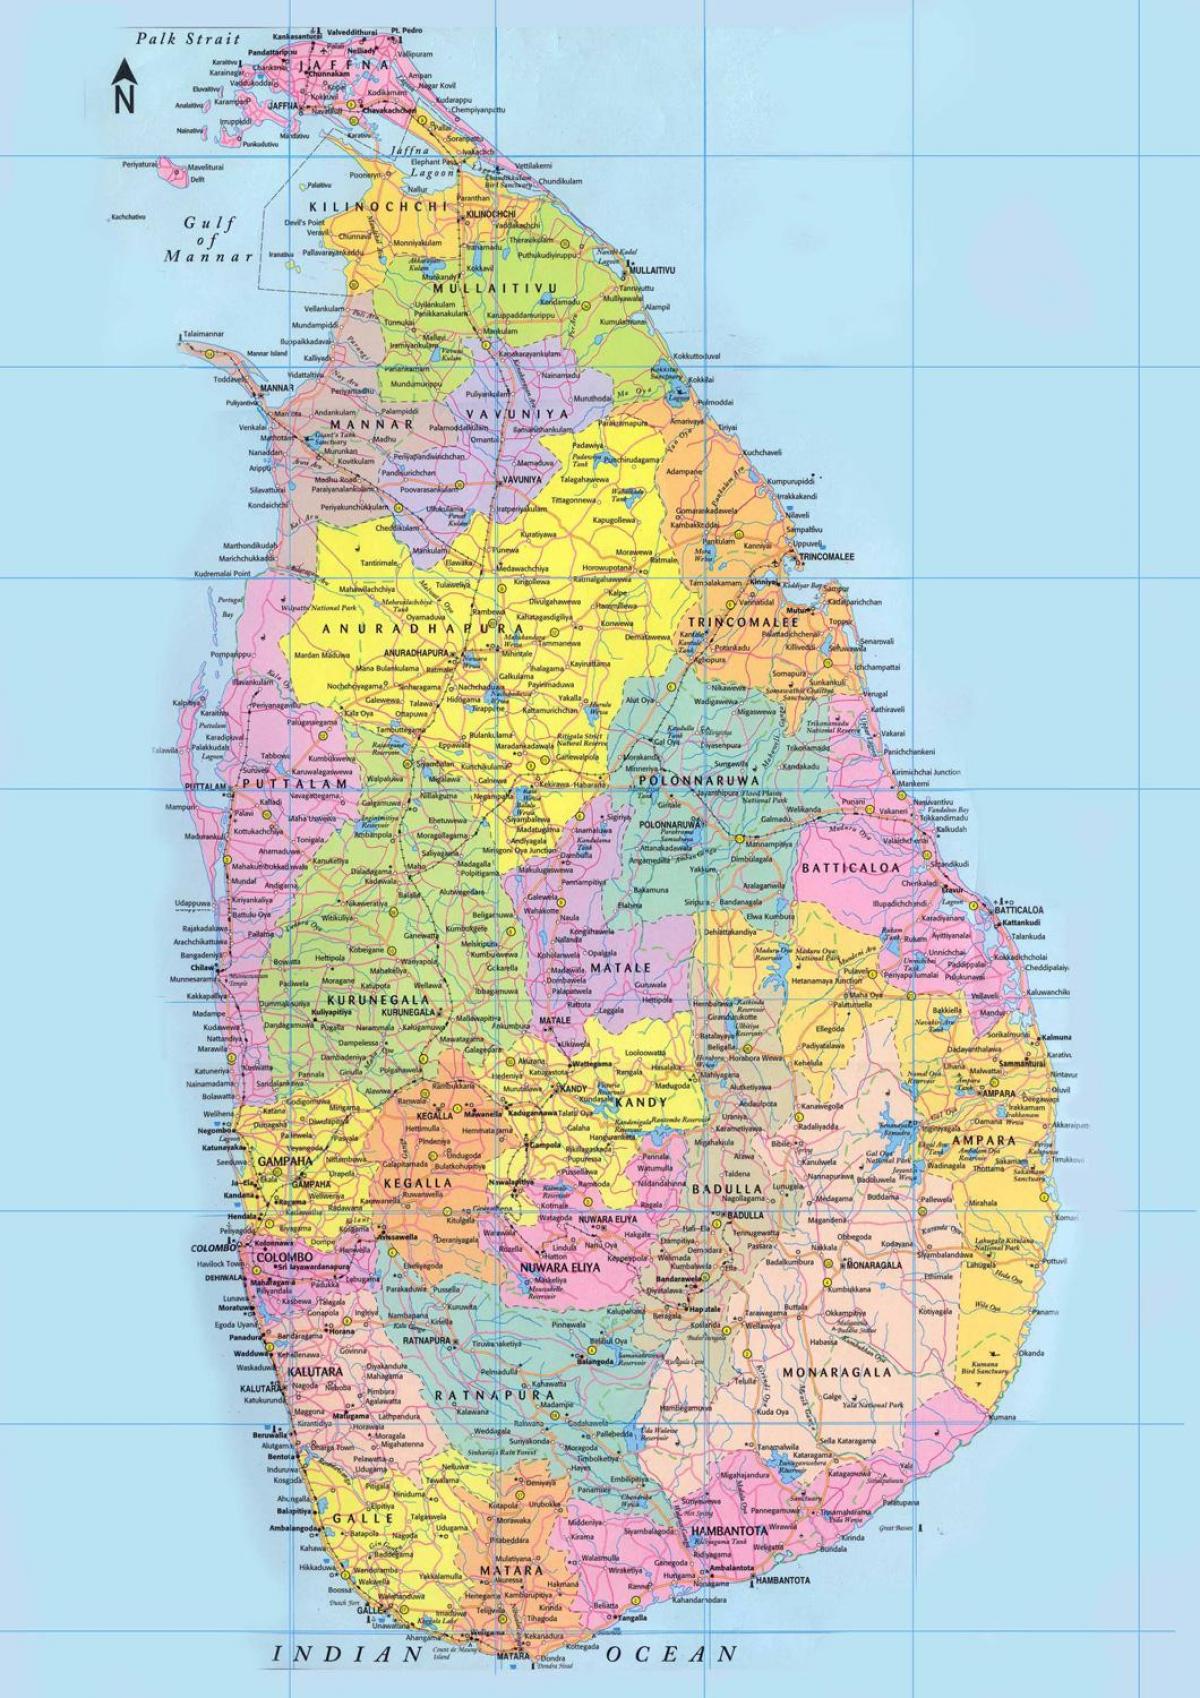 Sri Lanka ramani ya barabara umbali km